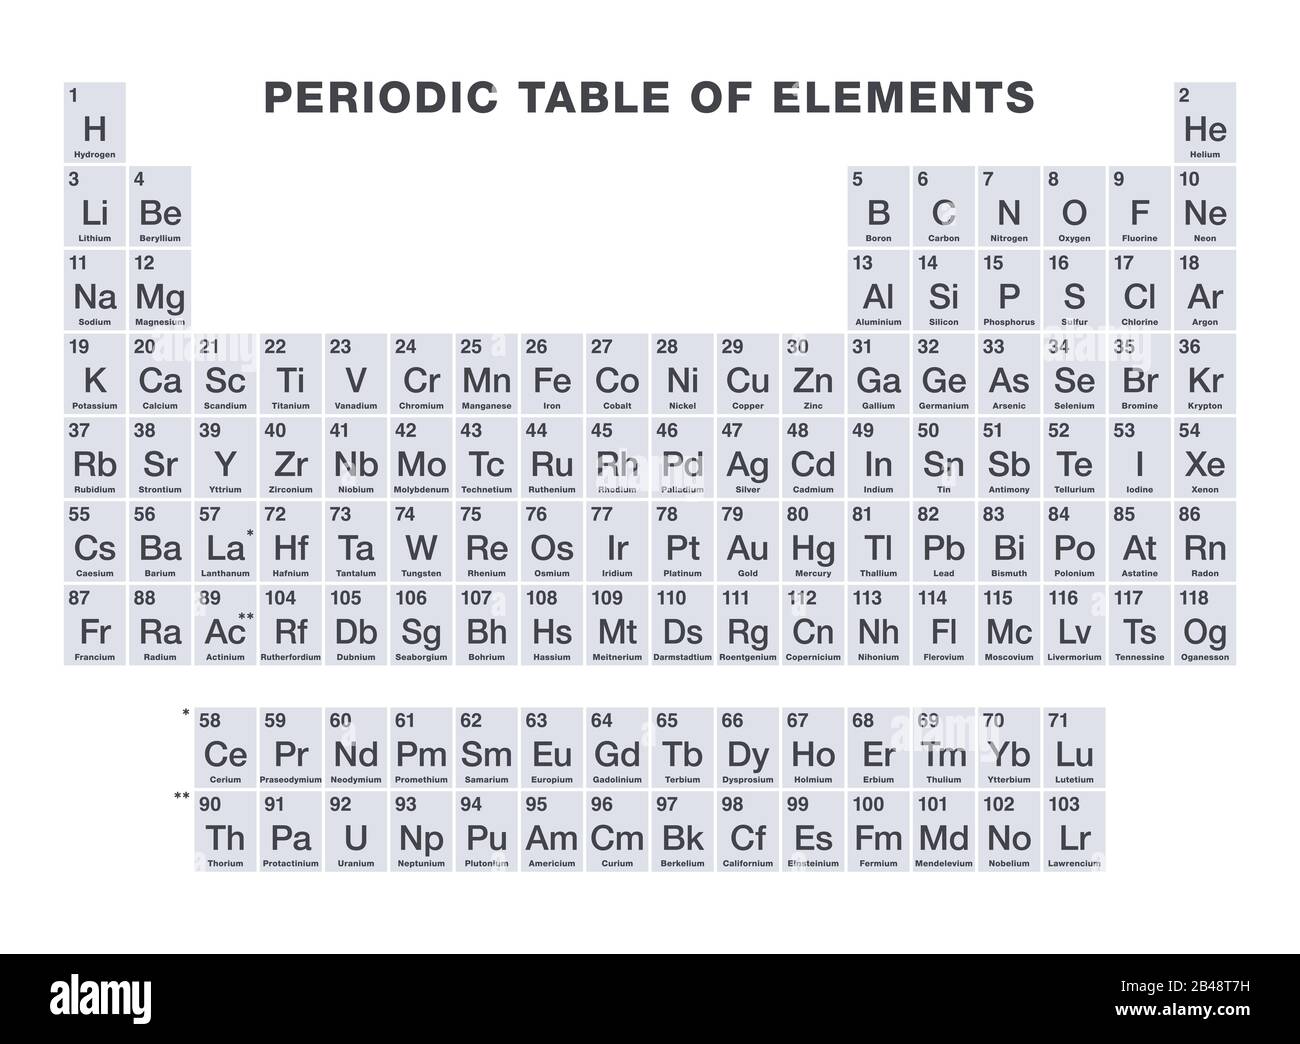 Graufarbiges Periodensystem der Elemente. Periodensystem, eine tabellarische Darstellung der 118 bekannten chemischen Elemente. Mit Ordnungszahlen, chemischen Namen. Stockfoto